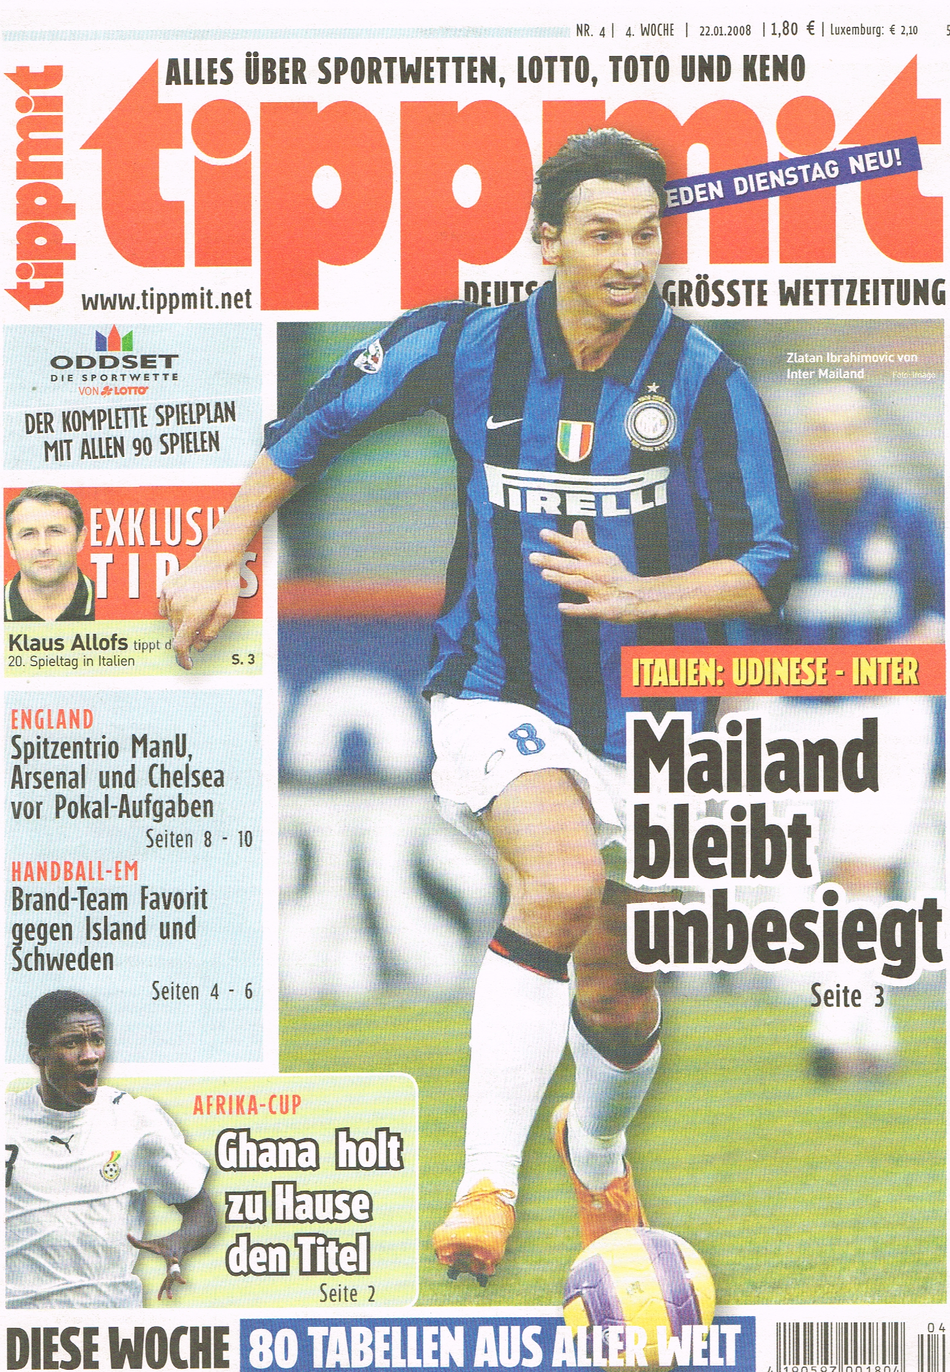 Titelbild der "tippmit" 04/2008 mit dem bosnisch/schwedischen Fussballstar Zlatan Ibrahimovic